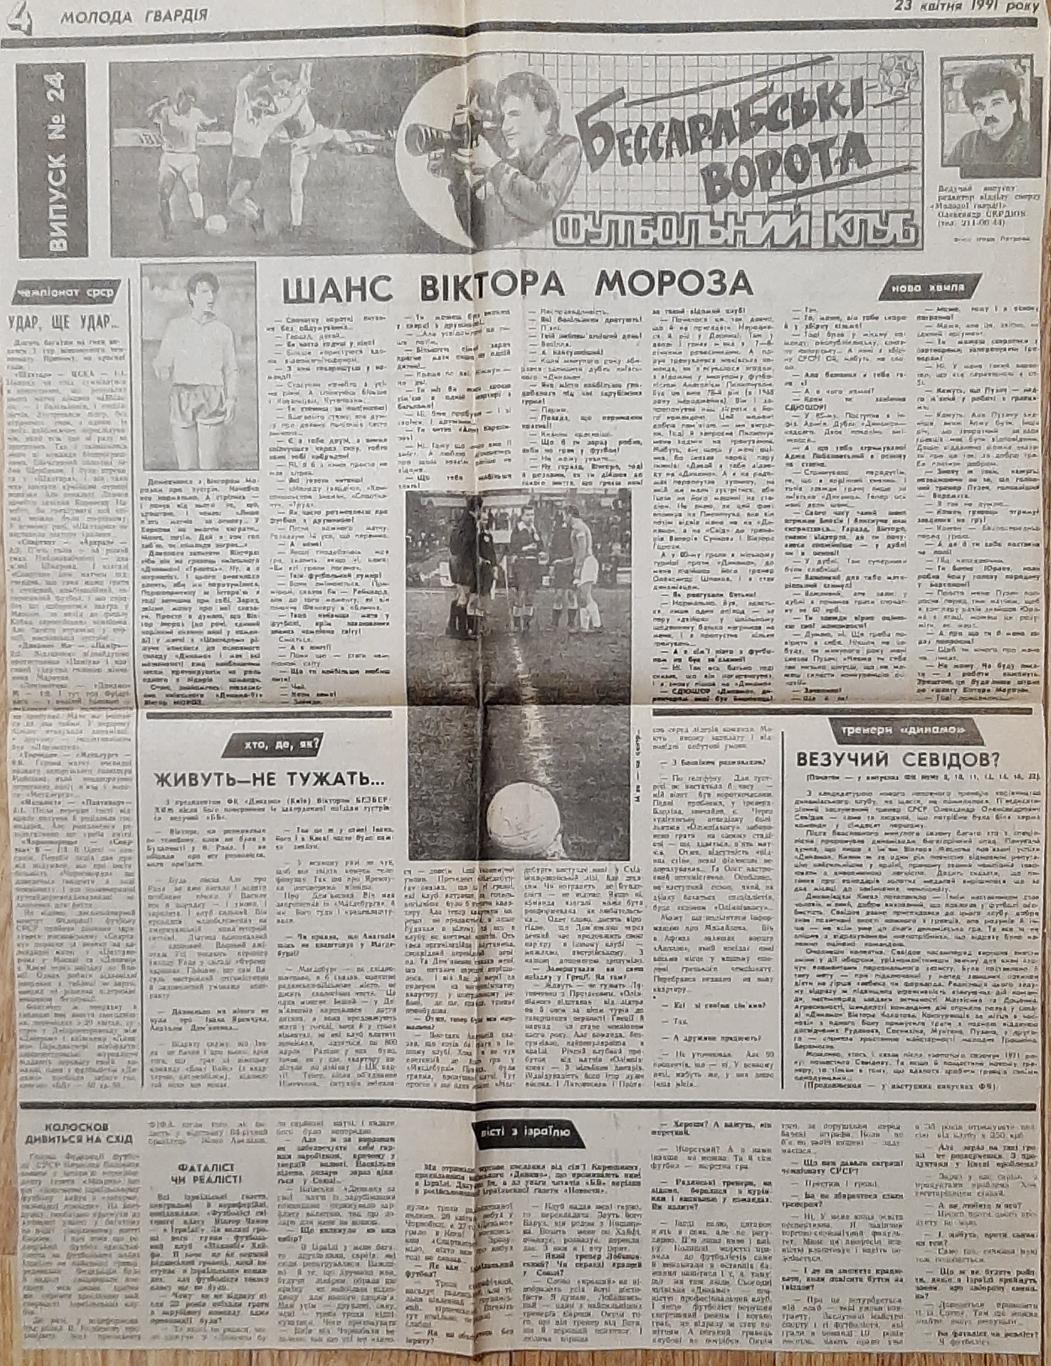 Вирізка з газети Молода гвардія (23.04.1991) Бессарабські ворота випуск #24